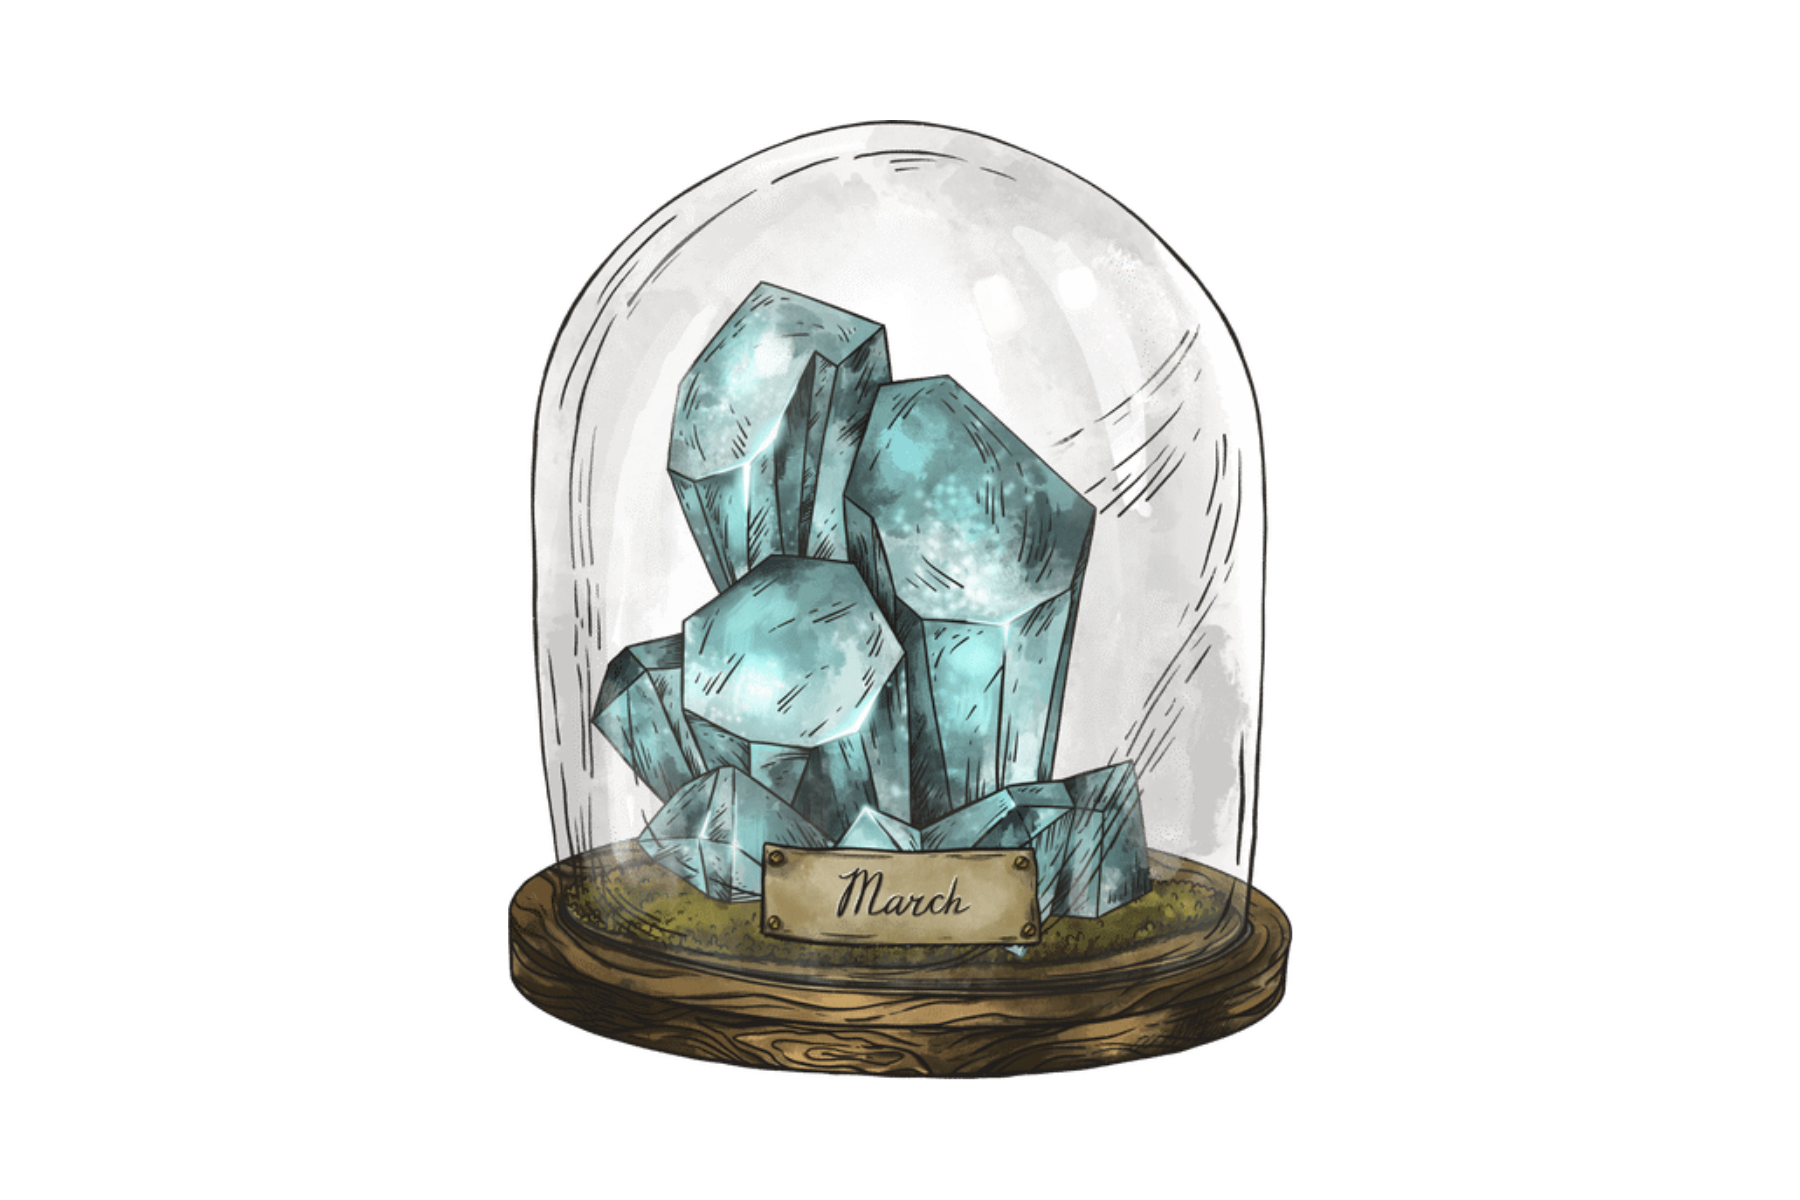 A glass jar with an Aquamarine birthstone